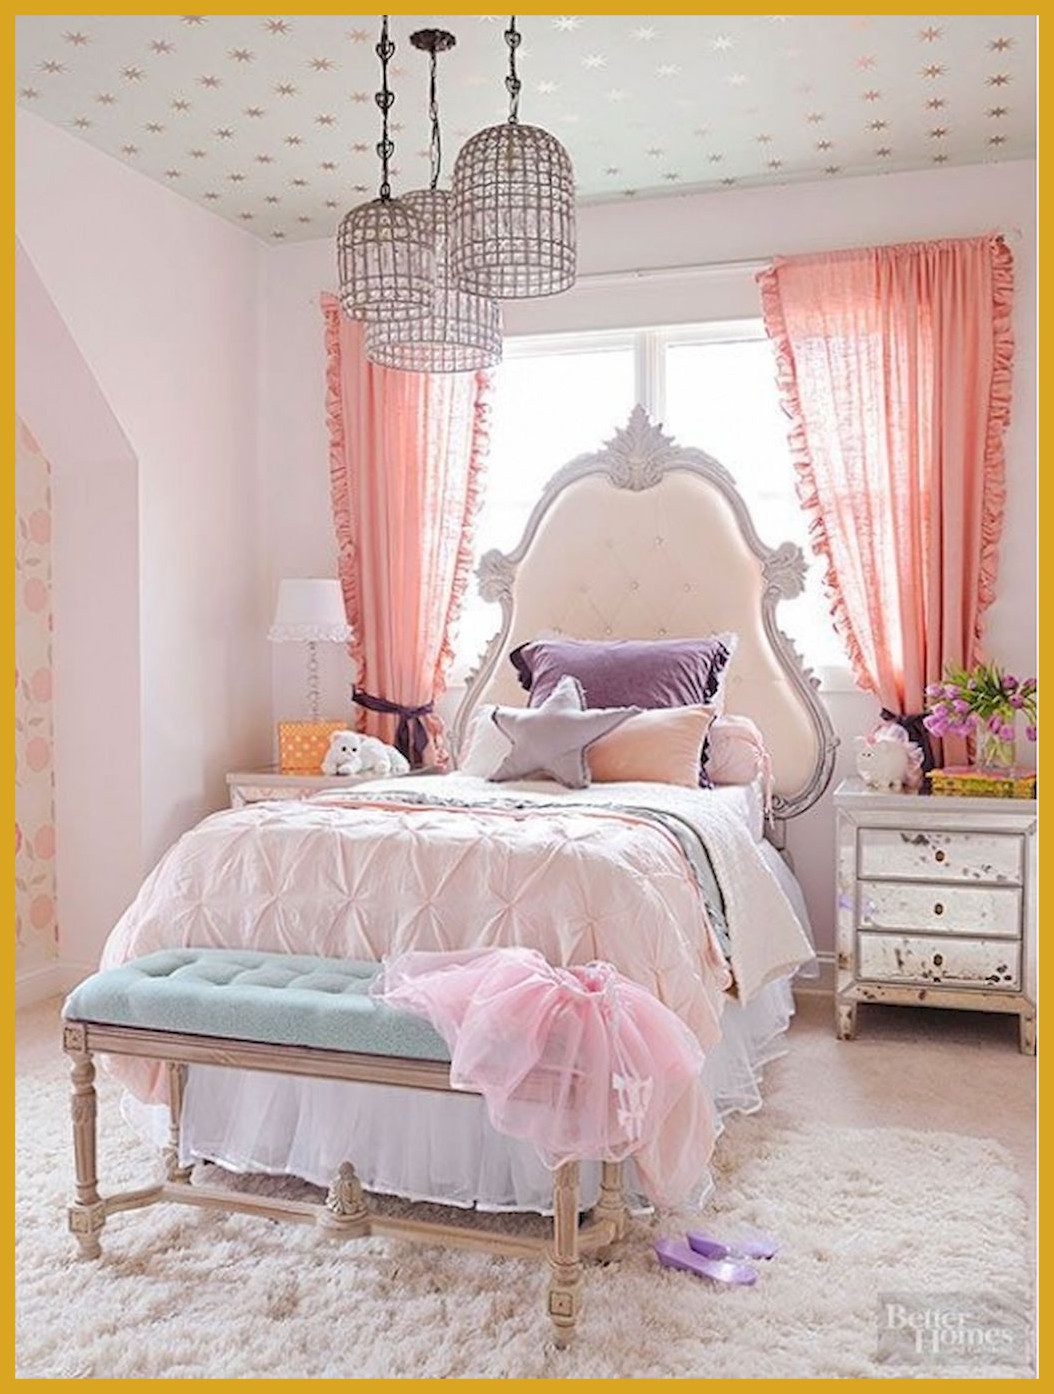 Thiết kế phòng ngủ cho bé gái dễ thương như trong cổ tích làm các bậc phụ huynh phải học tập tức thì - Ảnh 5.